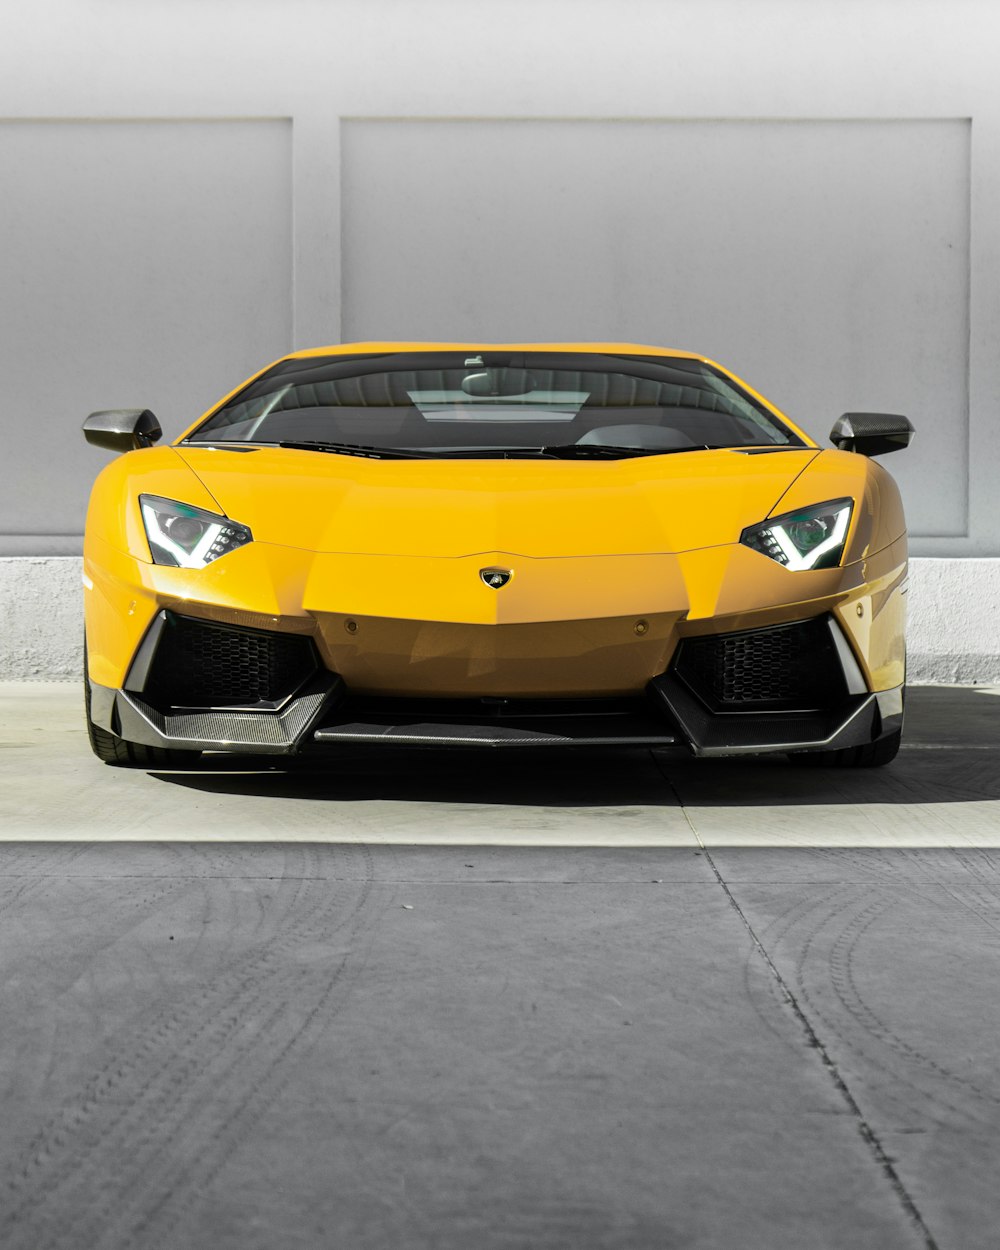 Lamborghini Aventador jaune garée sur une route en béton gris